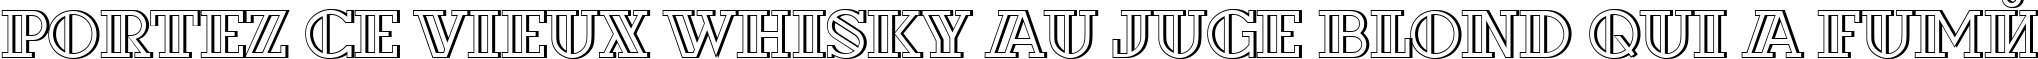 Пример написания шрифтом a_DexterOtlDecor3D текста на французском